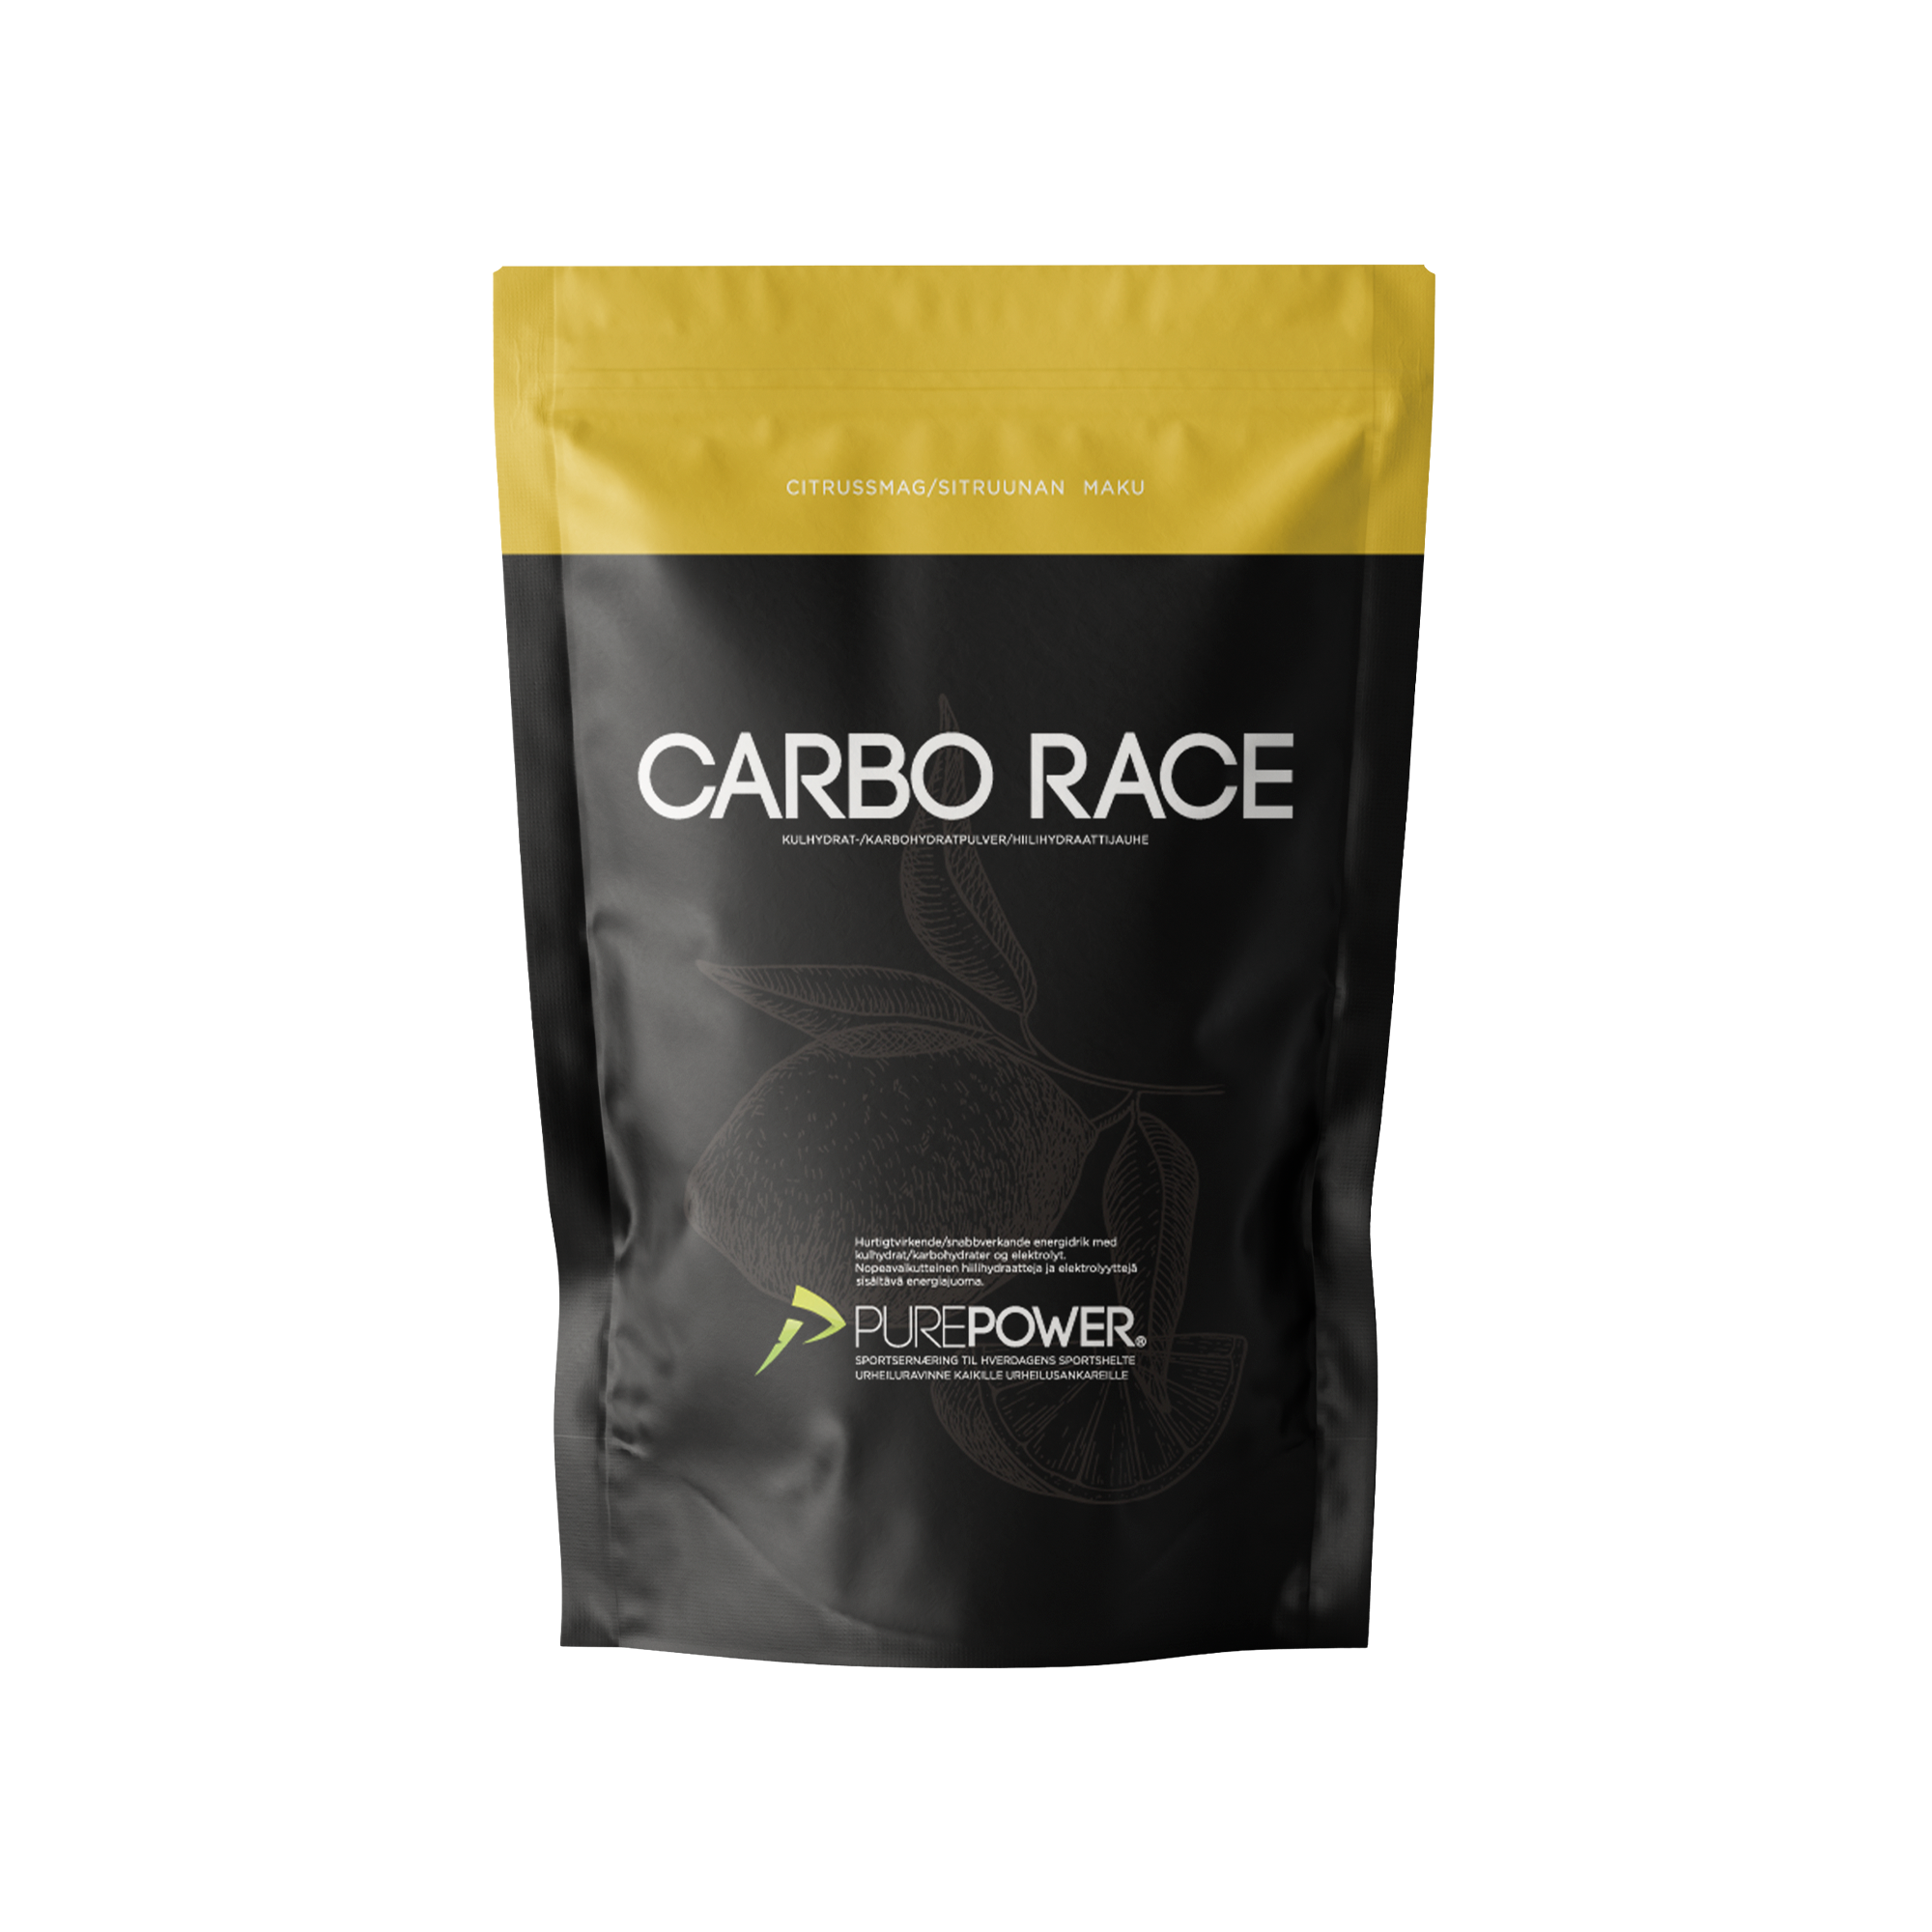 Se PurePower Carbo Race - Energidrik - Citrus - 1 kg hos PurePower